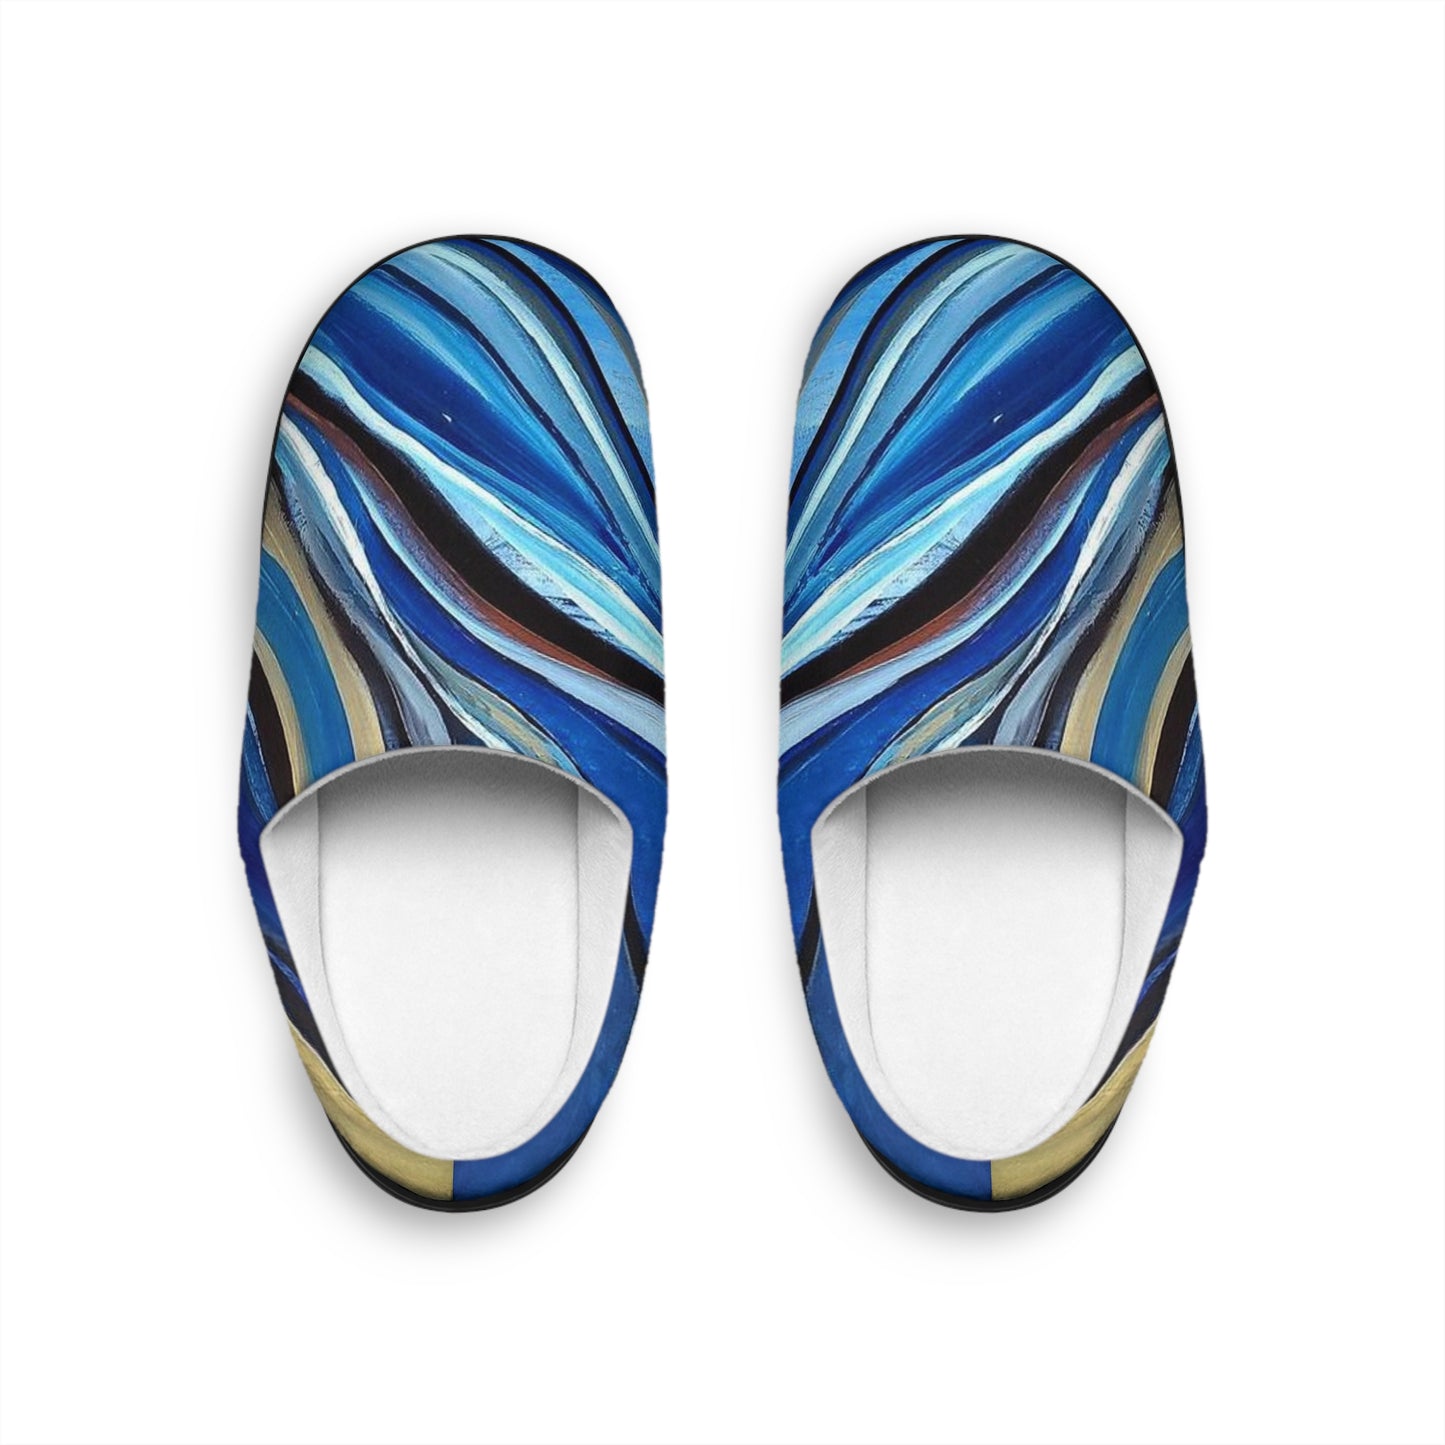 Blue & Beige Abstract Men's Indoor Slippers